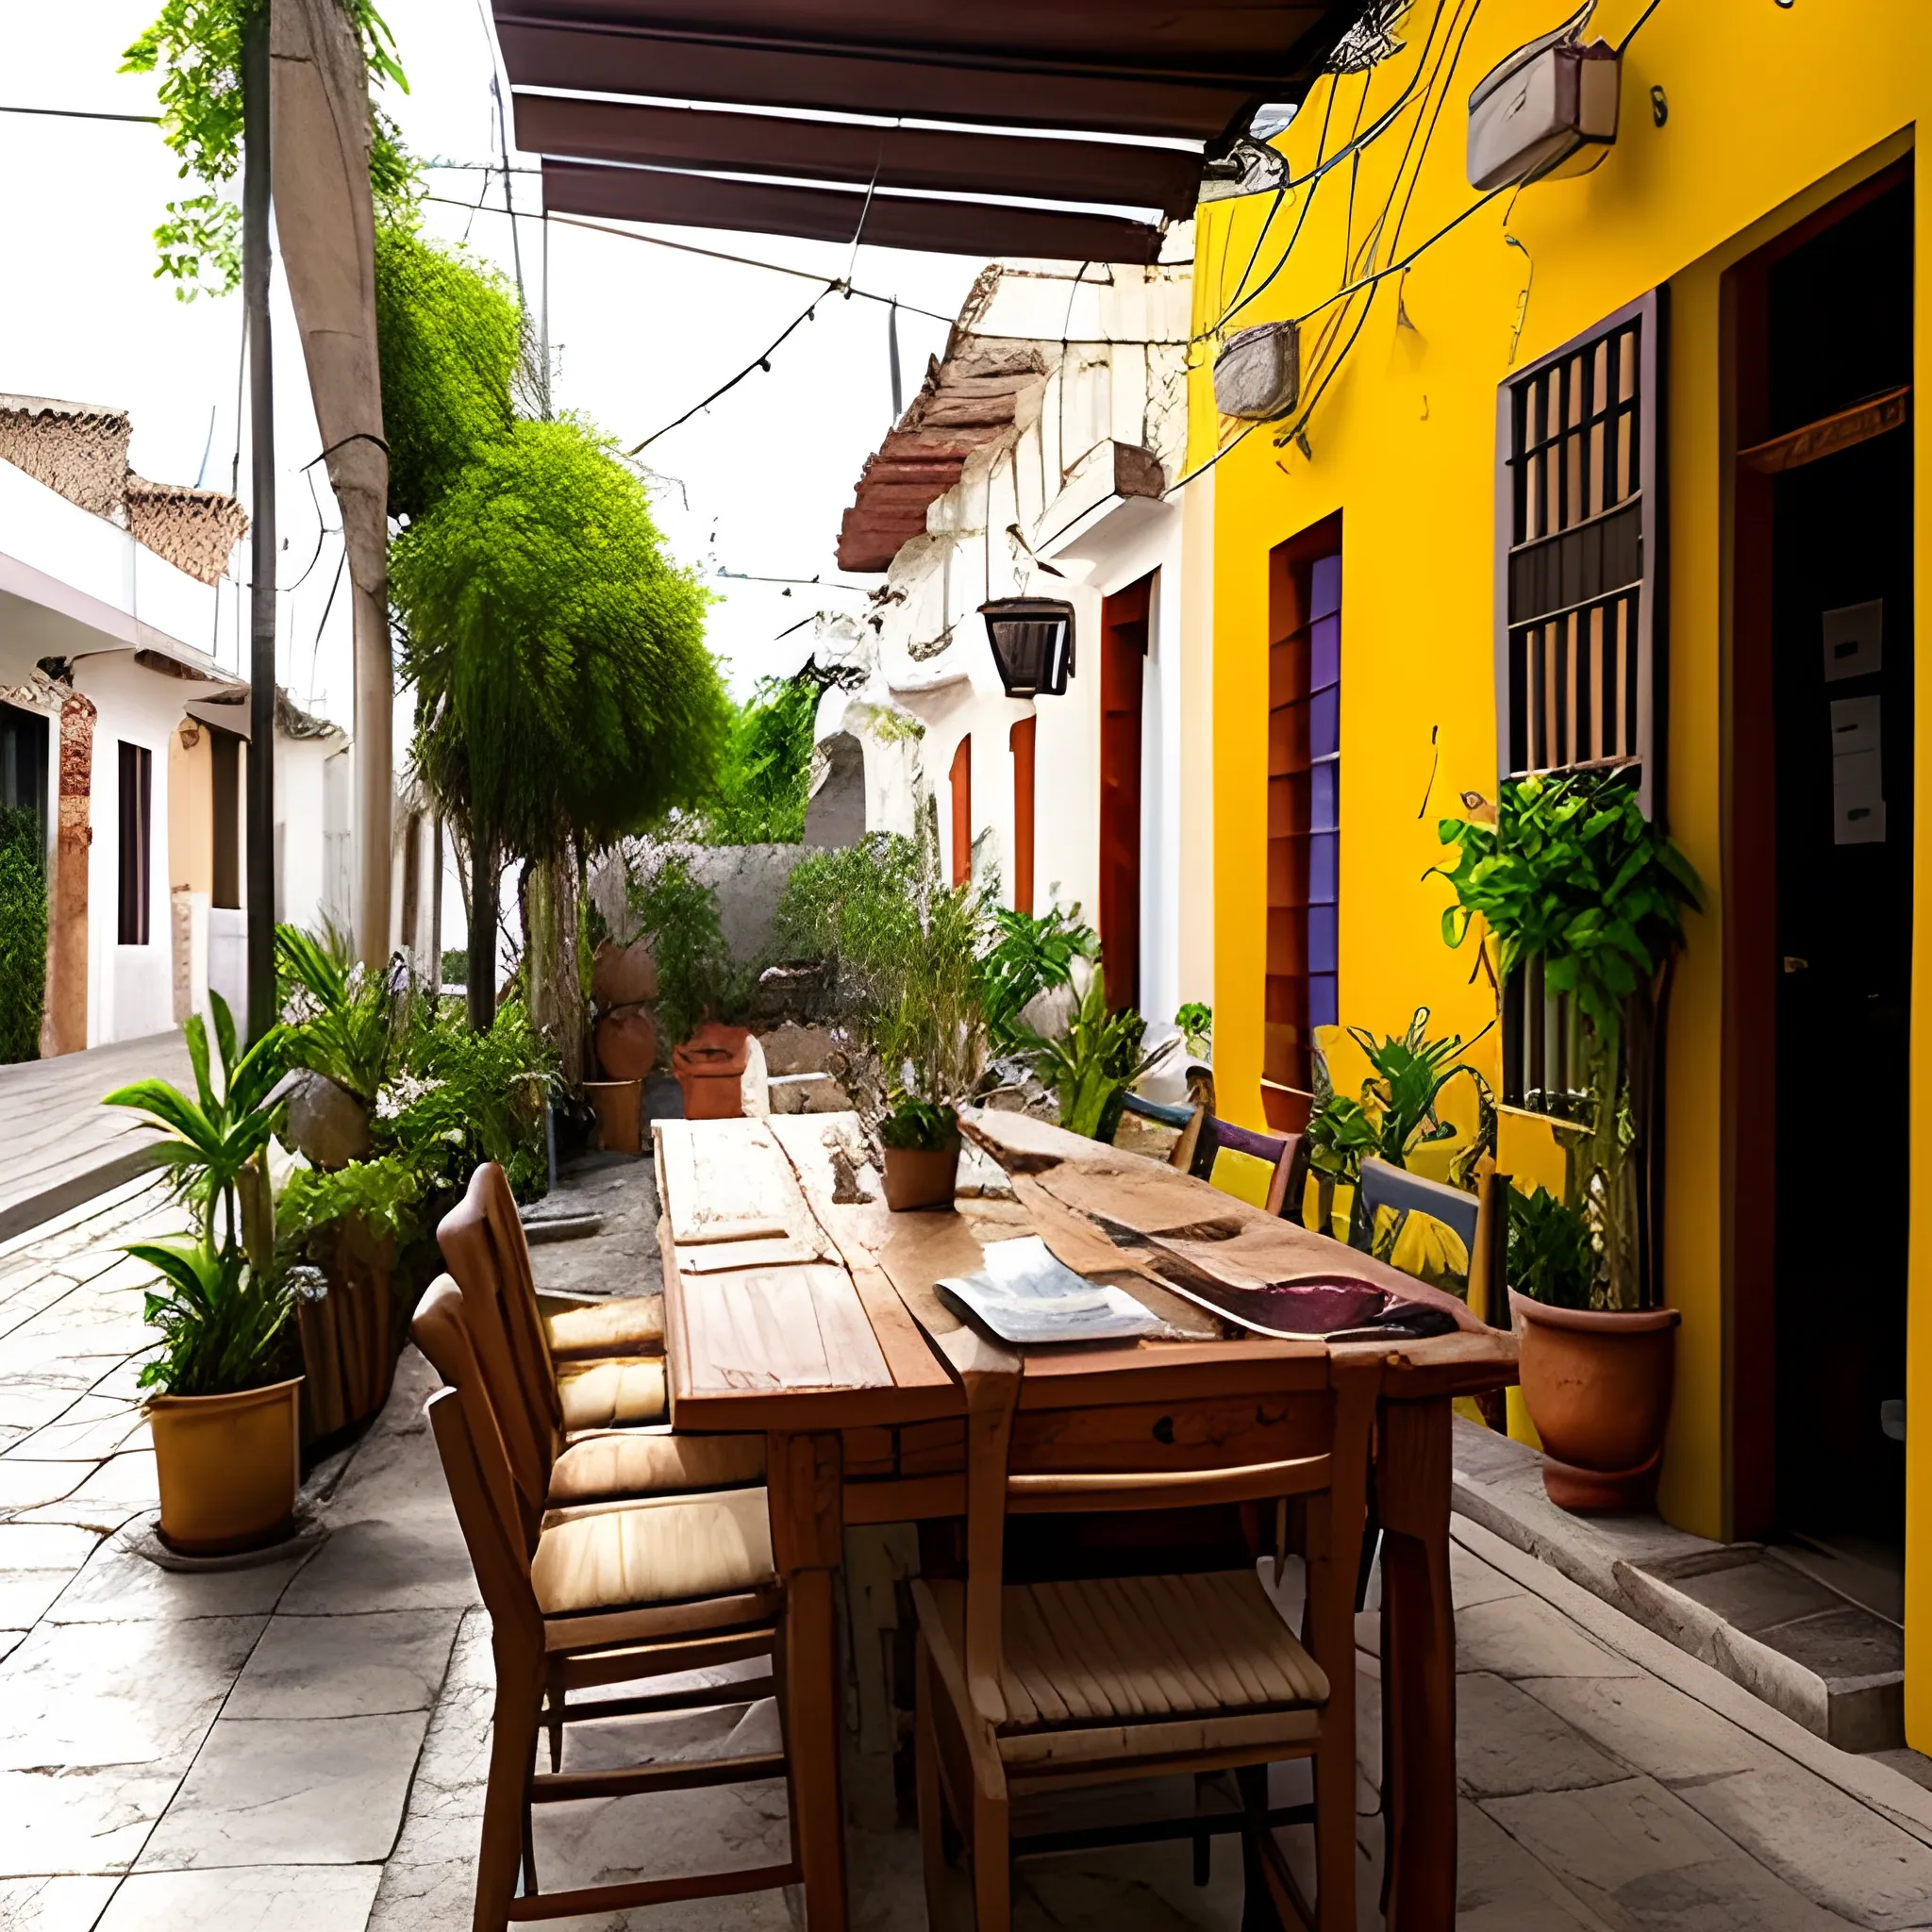 quiero la imagen tipo fotografía de una calle colonial abierta de la ciudad de Metapán, El Salvador. a un lado el patio abierto de una iglesia y al otro lado una sola casa con muchas plantas enredaderas y un negocio de comida con su menú al aire libre. Es de tarde, es un ambiente bohemio, de vino, quesos, mucho estilo. 